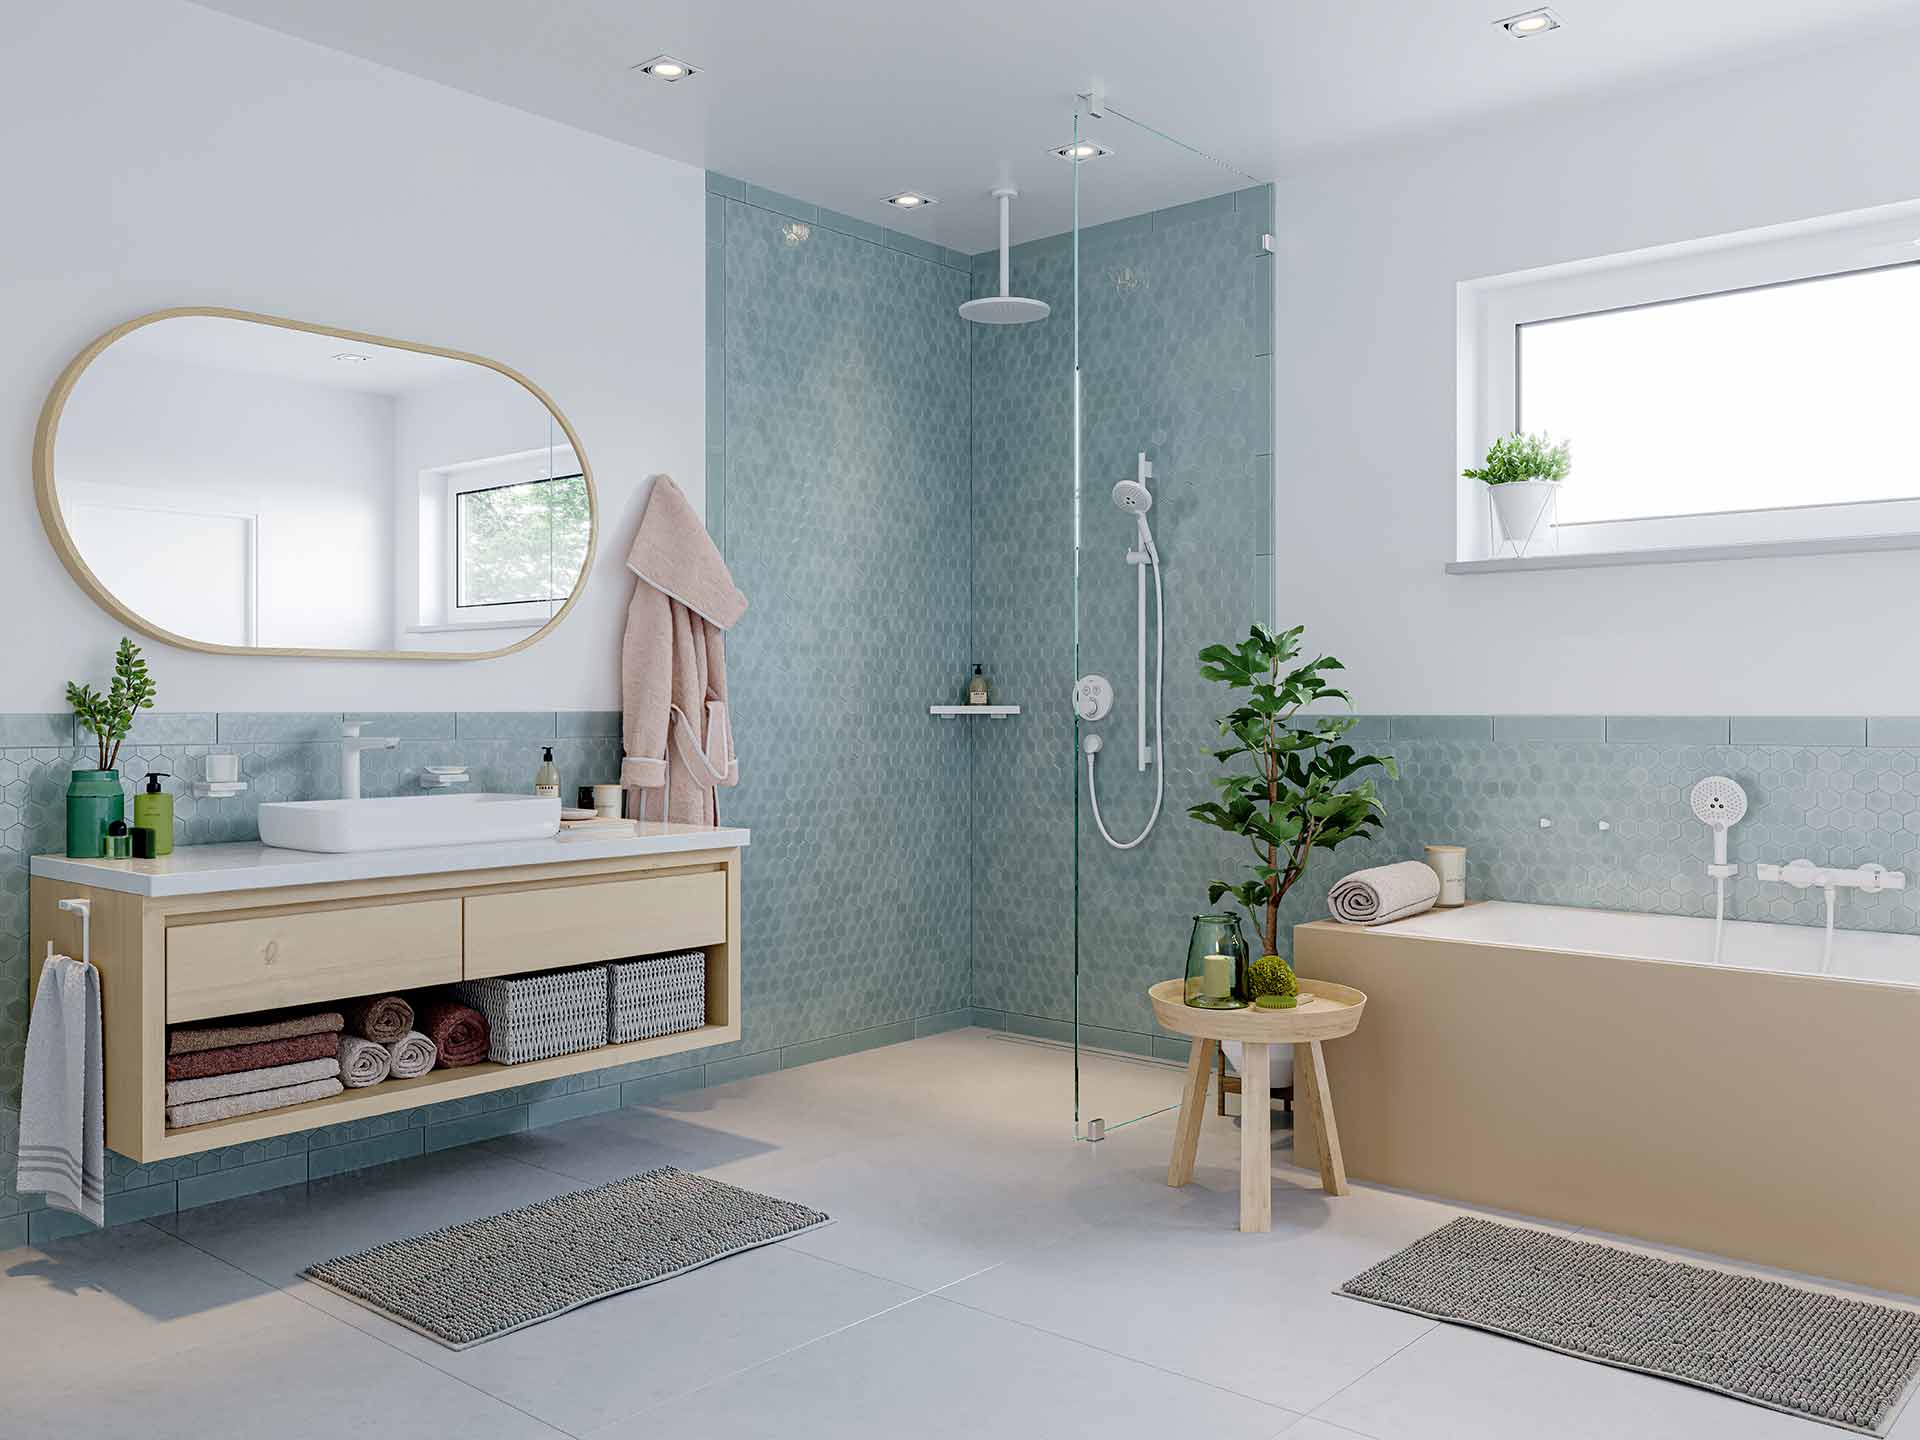 Zo plan je jouw badkamer met een perfect samenspel van vormen, kleuren en licht